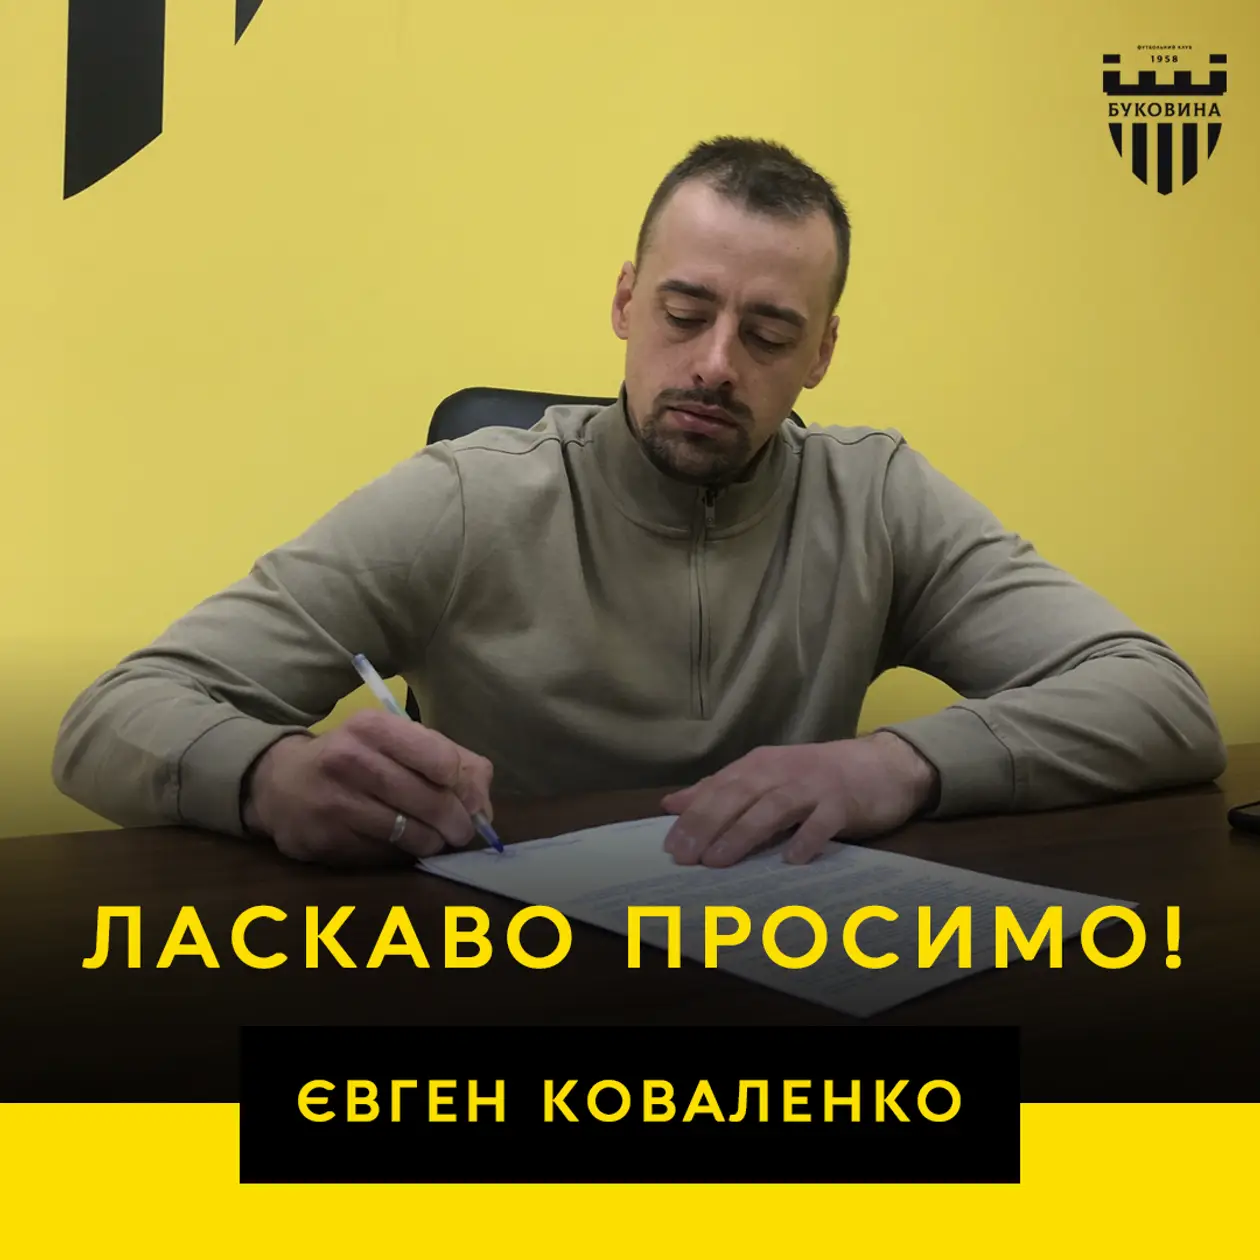 Євген Коваленко – головний тренер «Буковини»